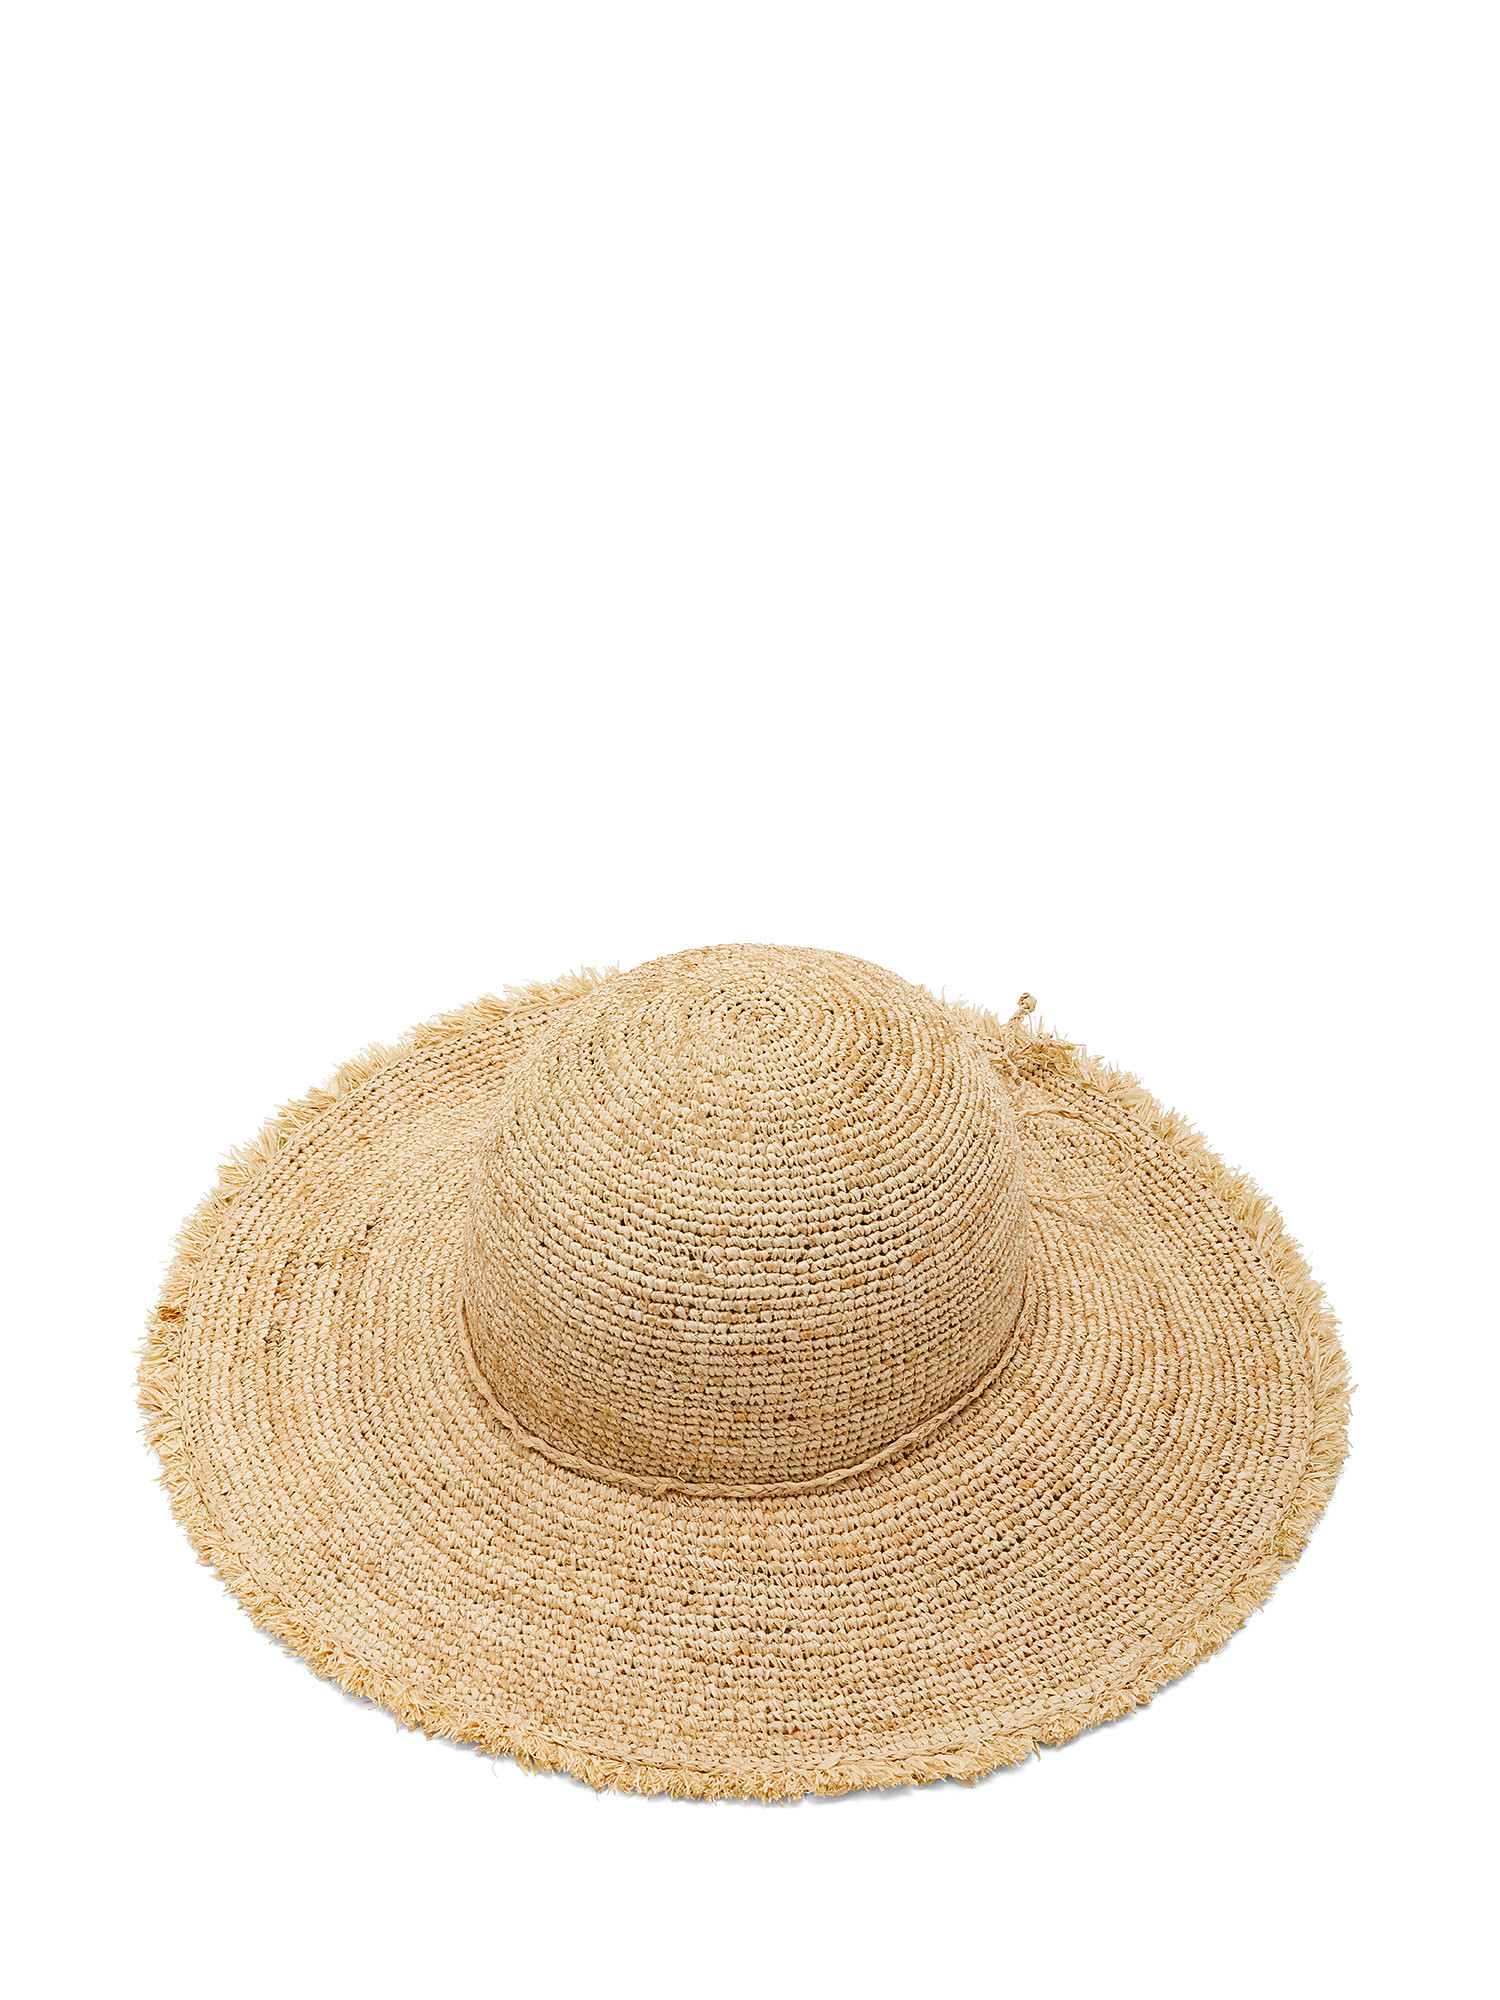 Wide-brimmed straw hat, Beige, large image number 0